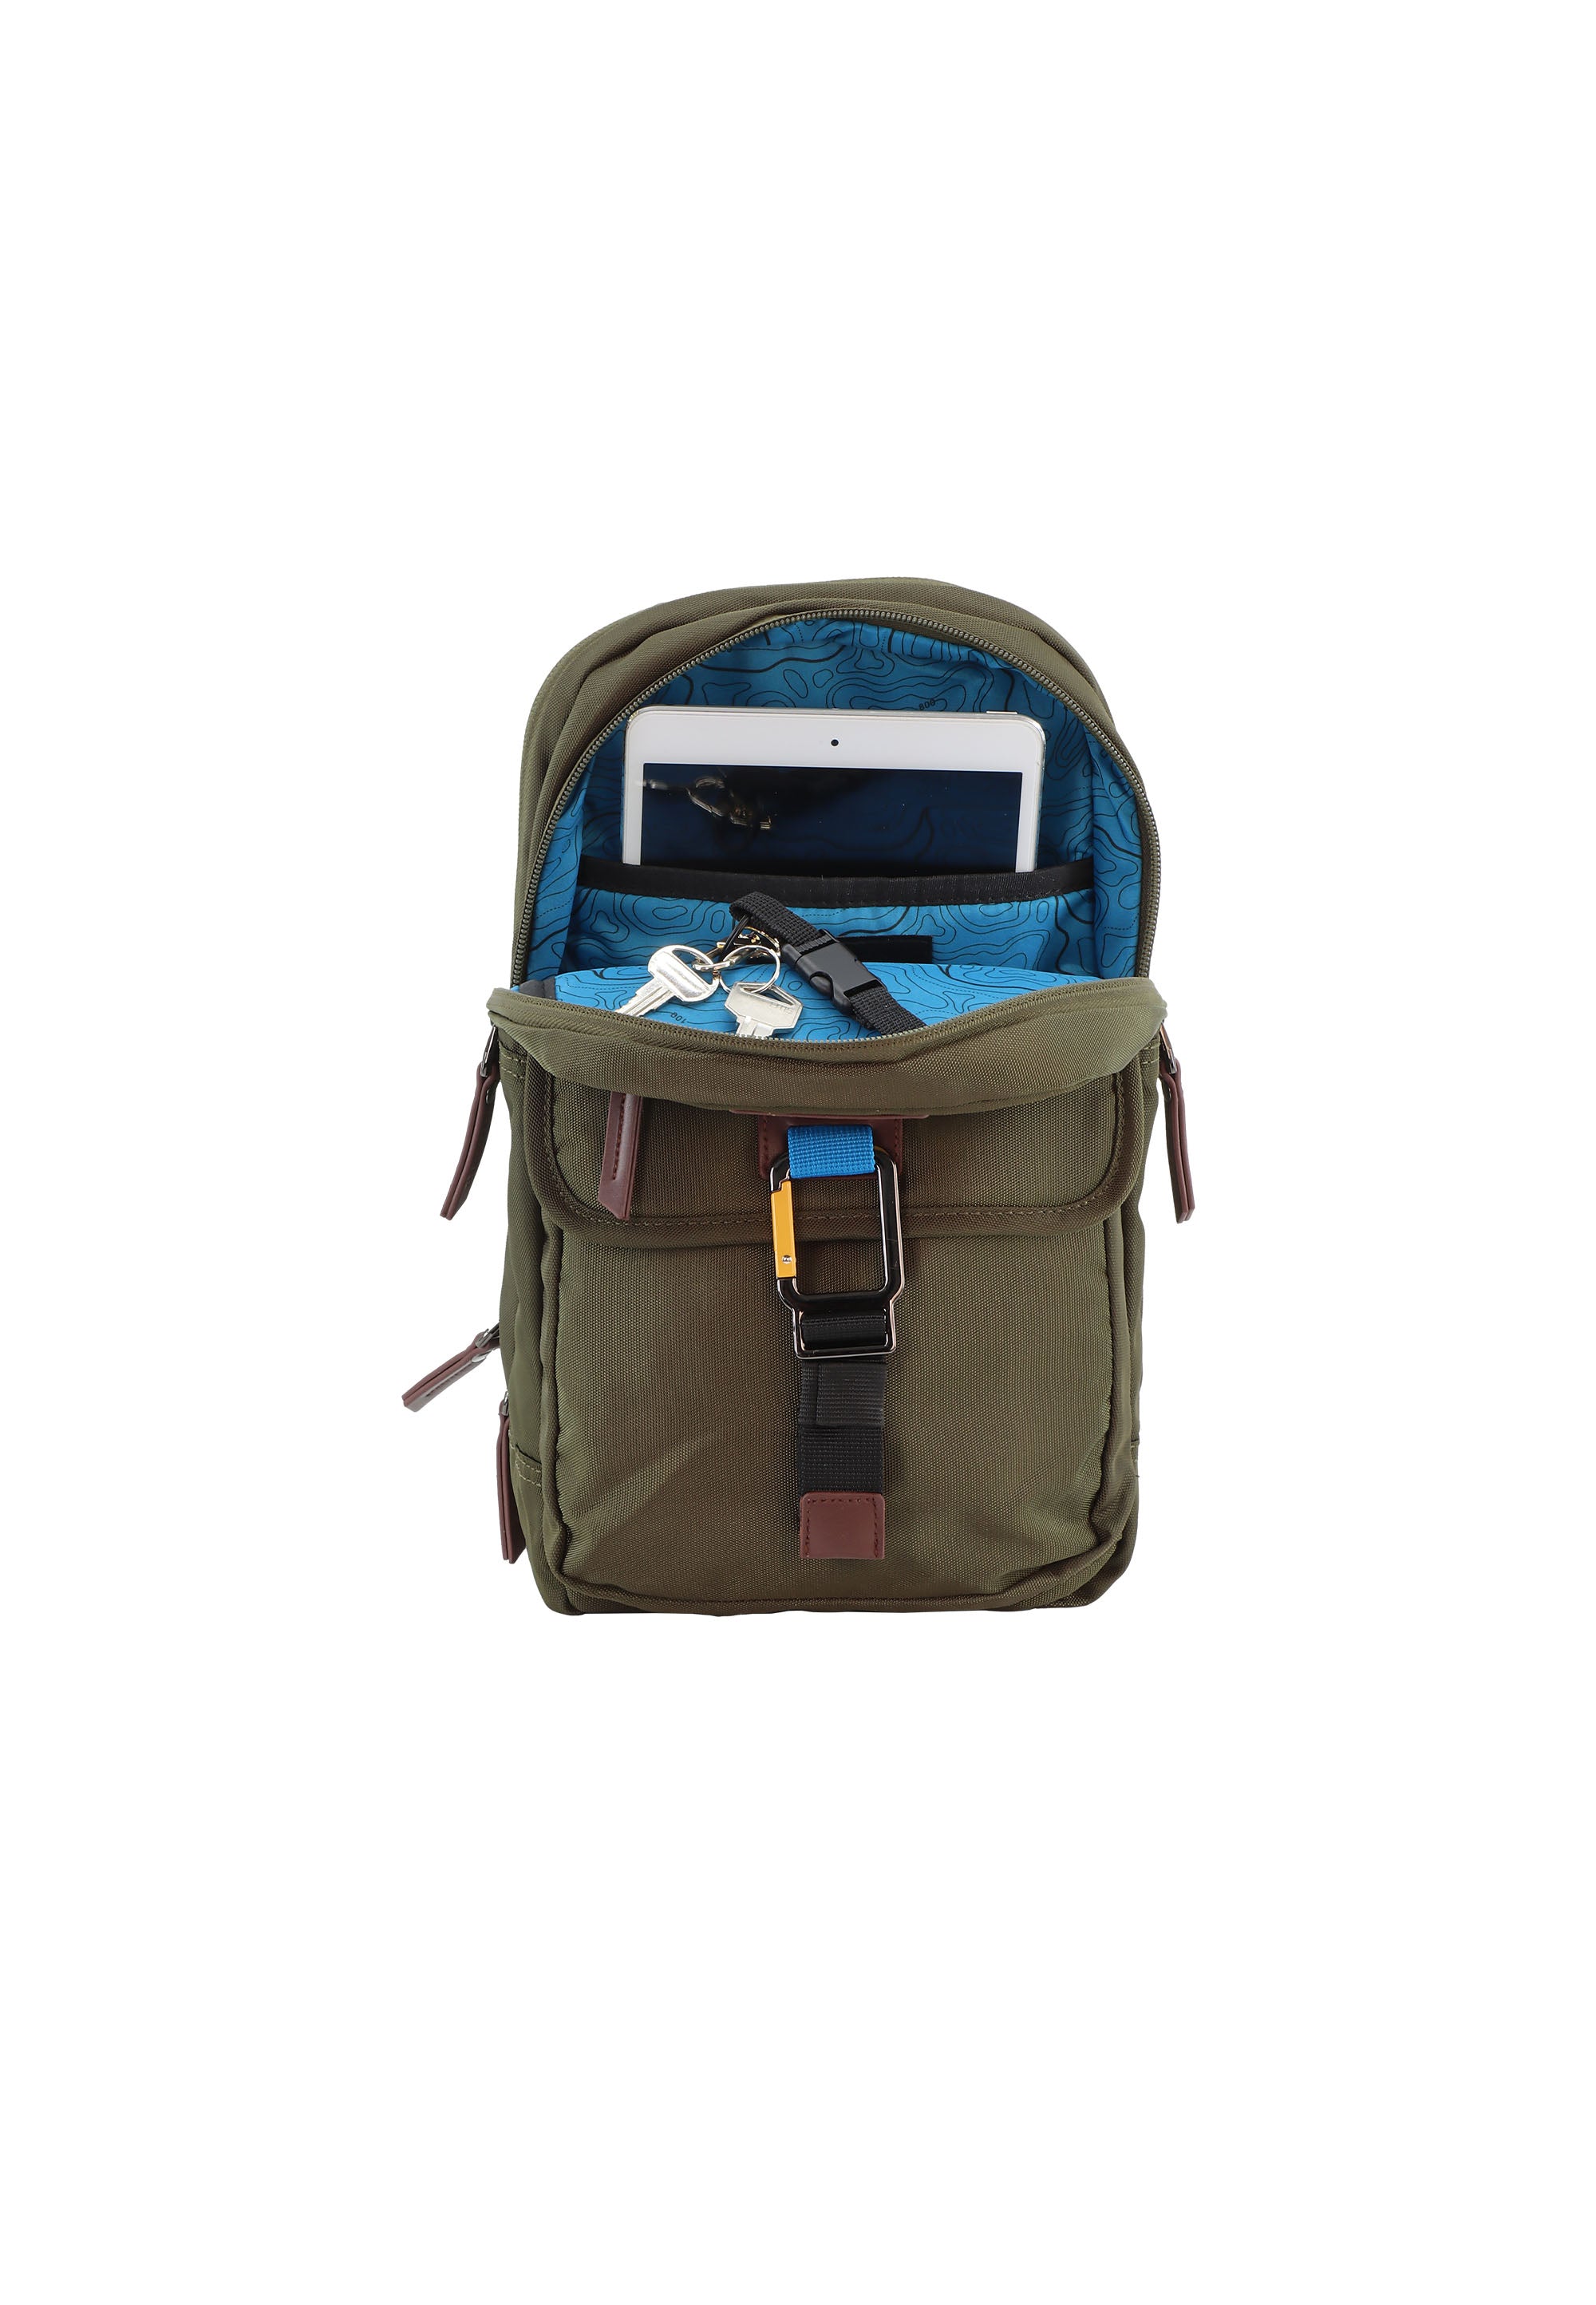 Discovery - Icon Rucksack mit einem Riemen - 8L - Khaki